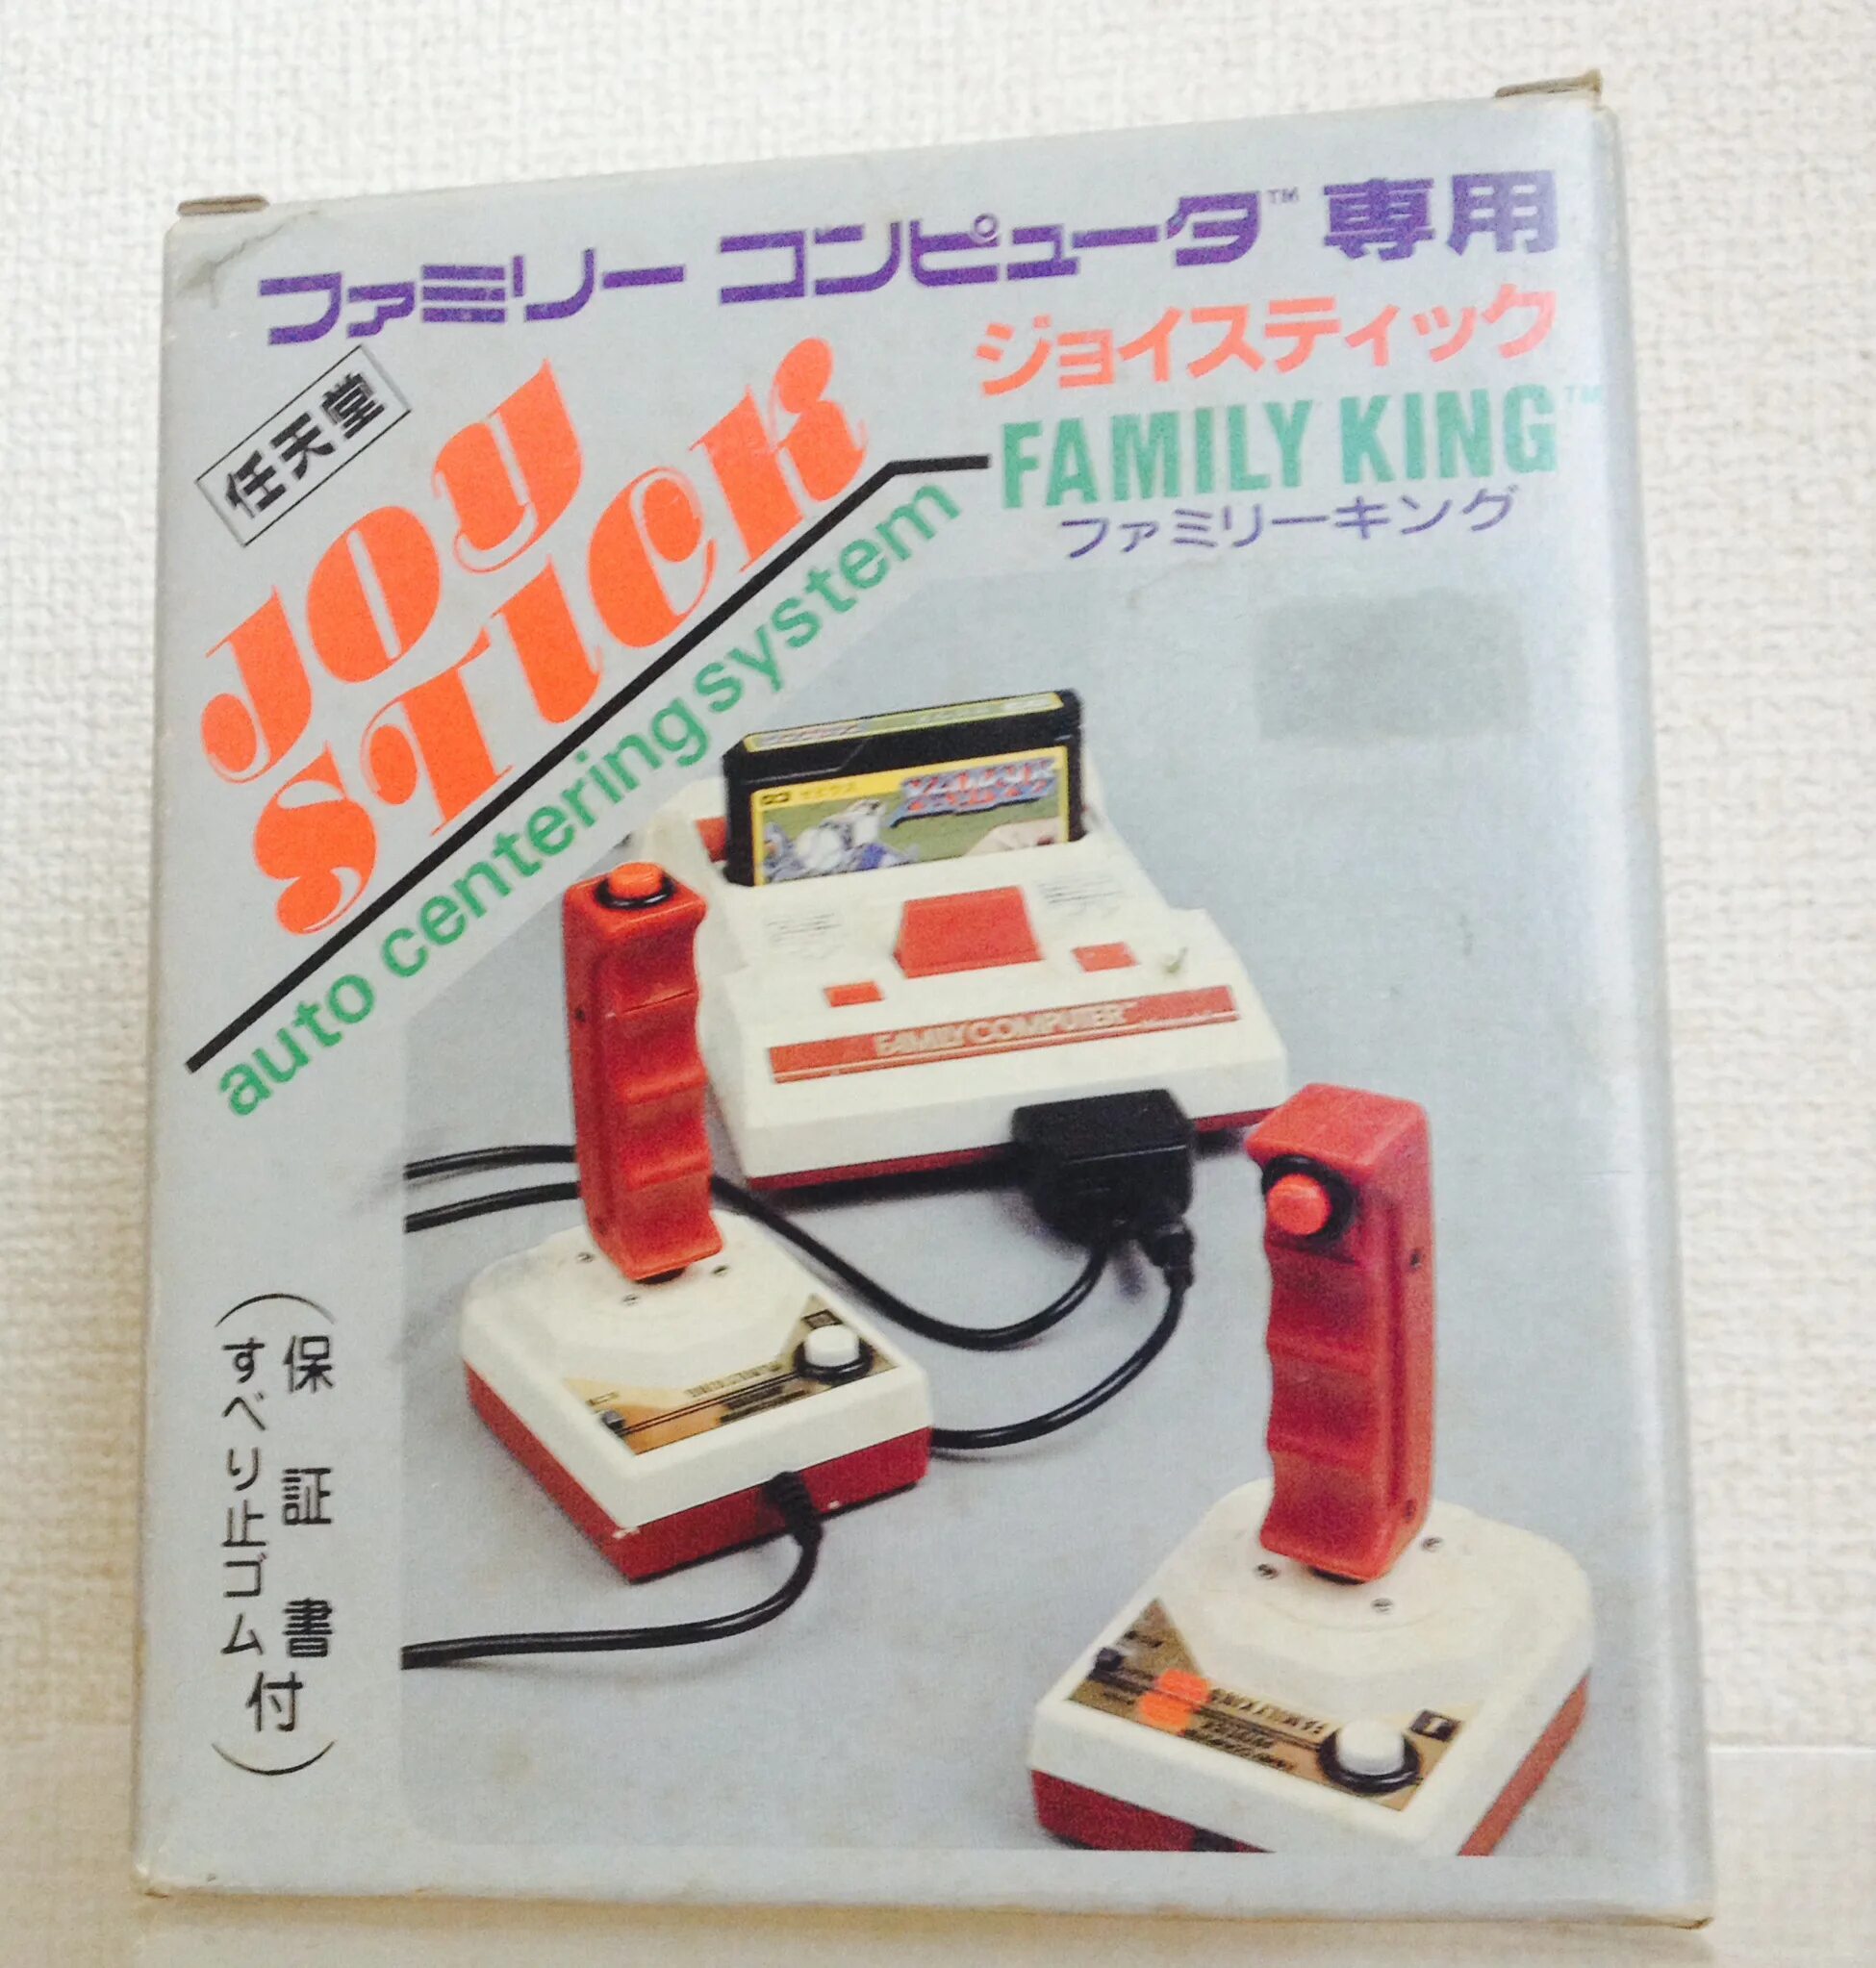 Джойстик от Фамиком. Джойстик Famicom. Famicom Hudson Gamepad. Famicom робот. Nintendo king